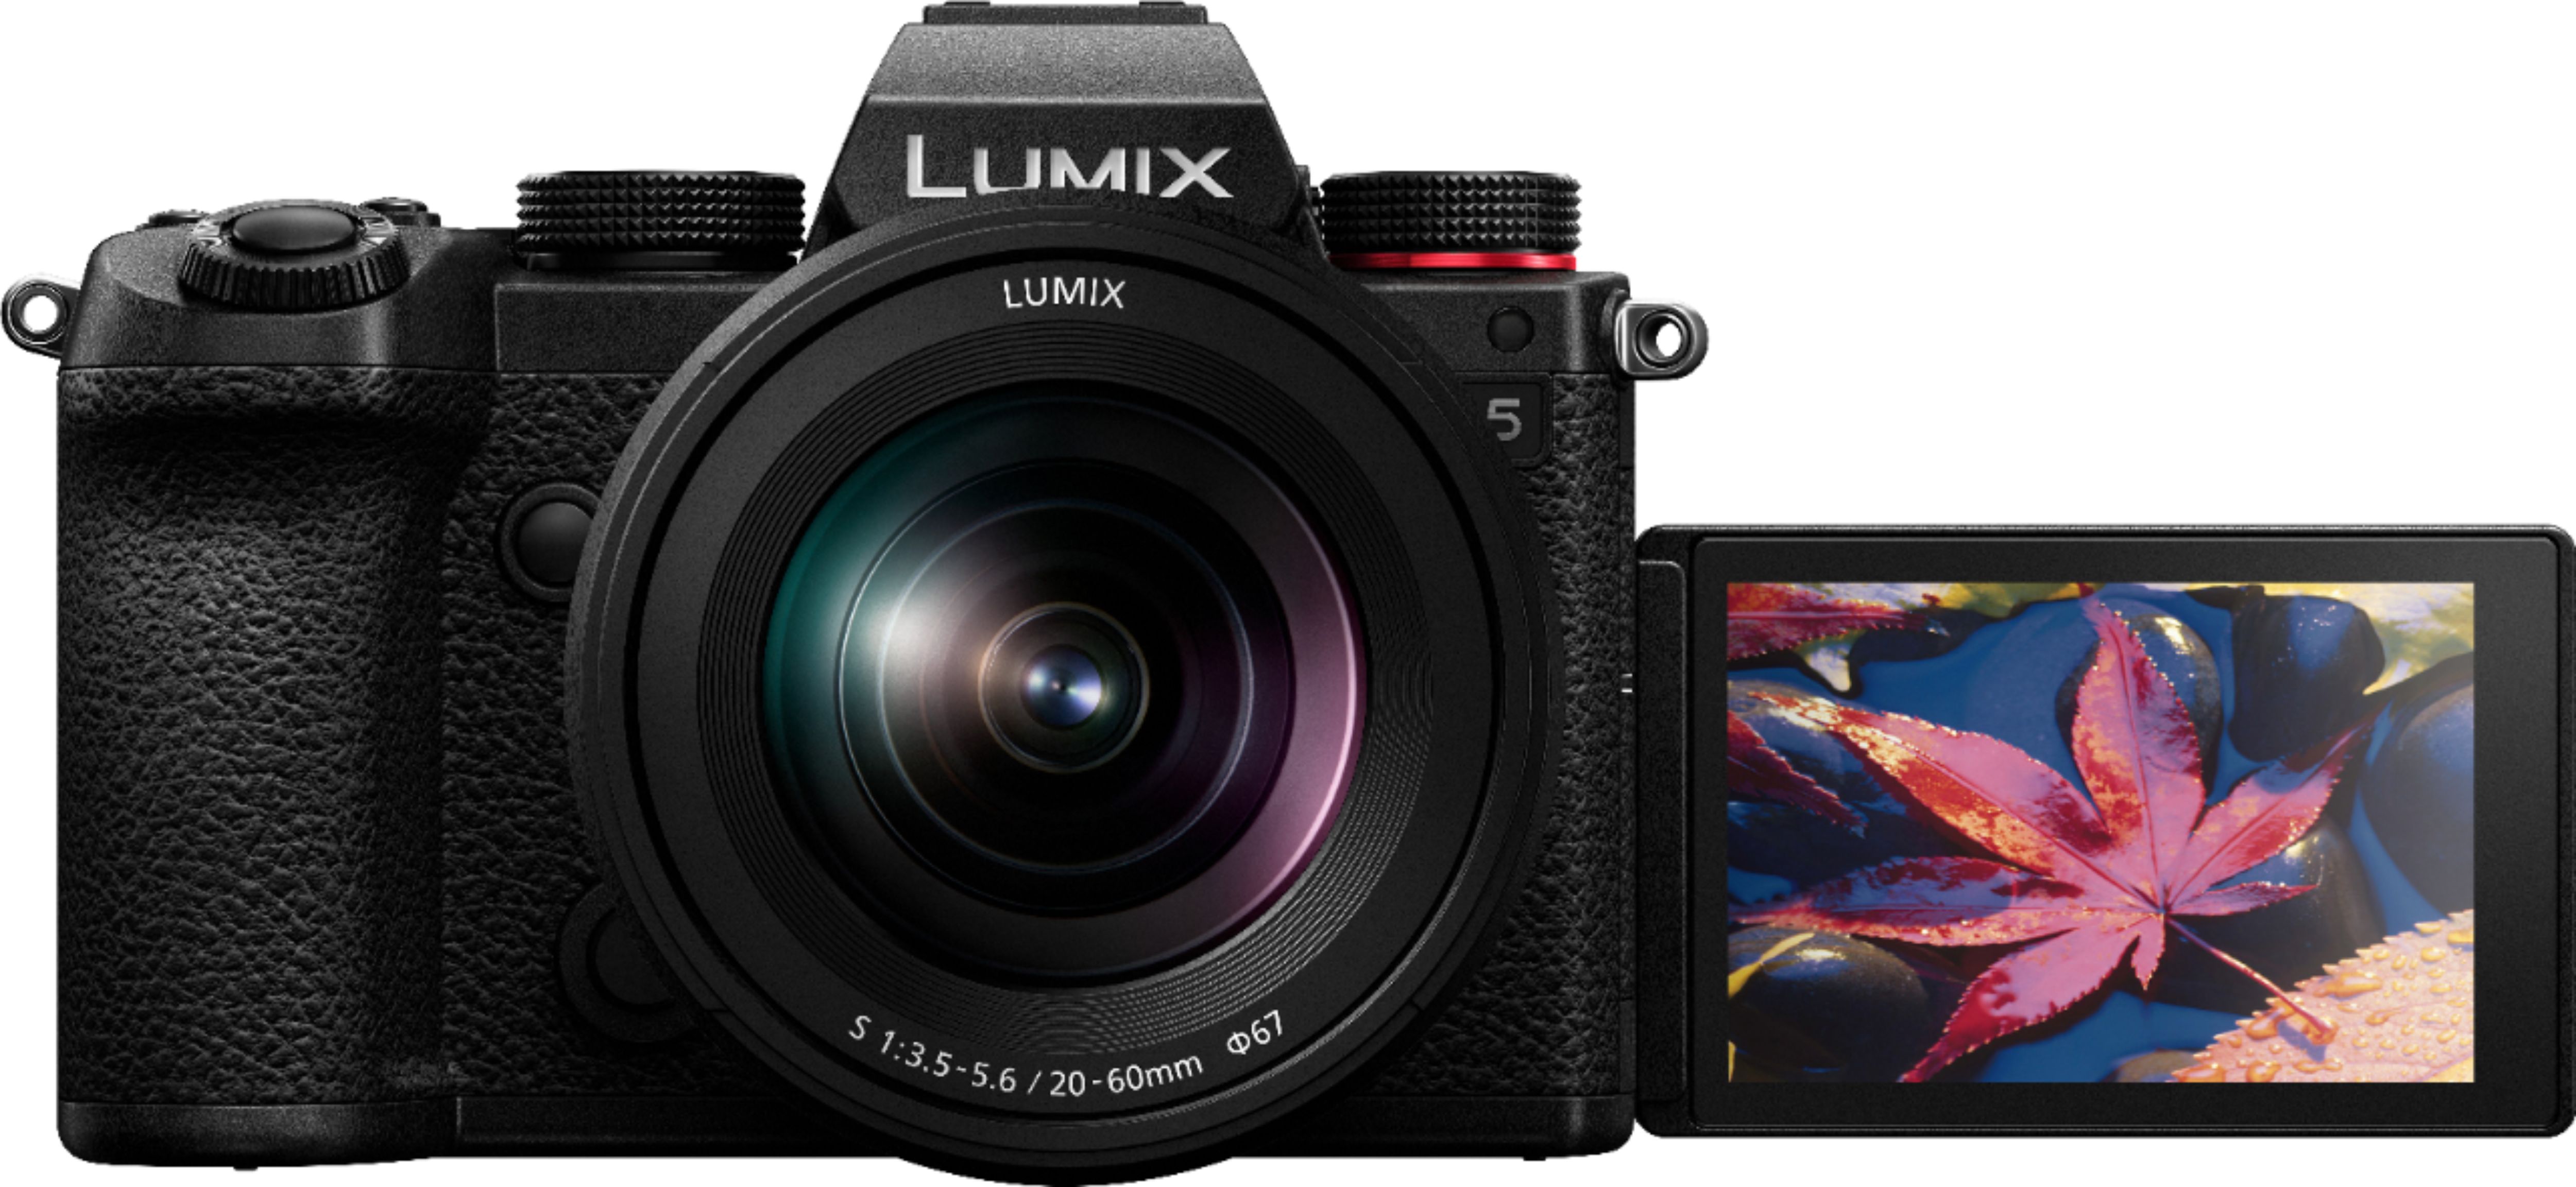 Panasonic LUMIX S5 Mirrorless Camera Body with 20-60mm F3.5